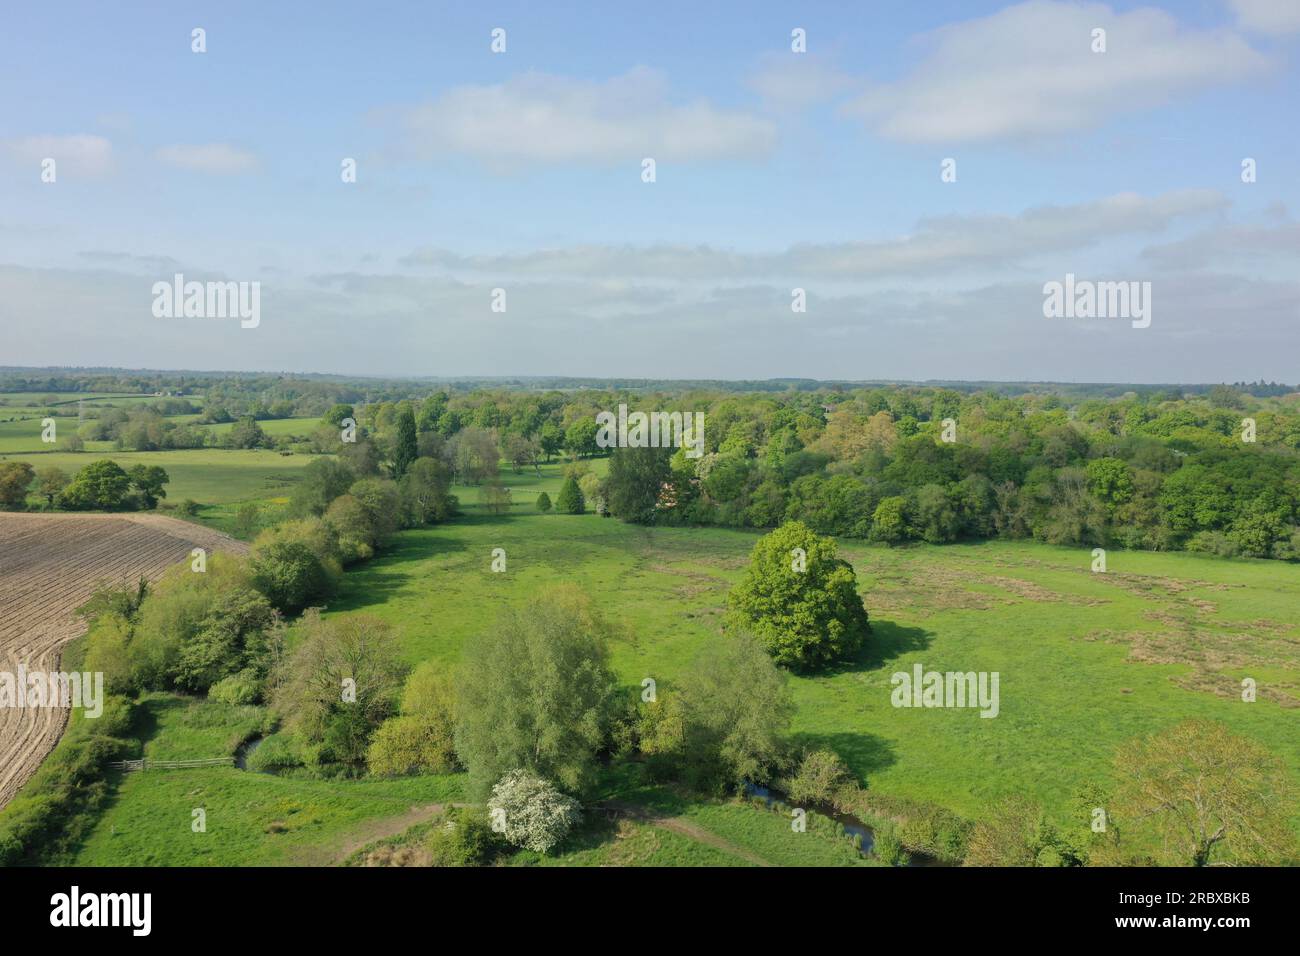 Drohnenperspektive über grünen Feldern von Hook, Hampshire, England. Die Bilder zeigen einen klaren Himmel und grüne Felder, die sich an der Horizontlinie treffen. Stockfoto